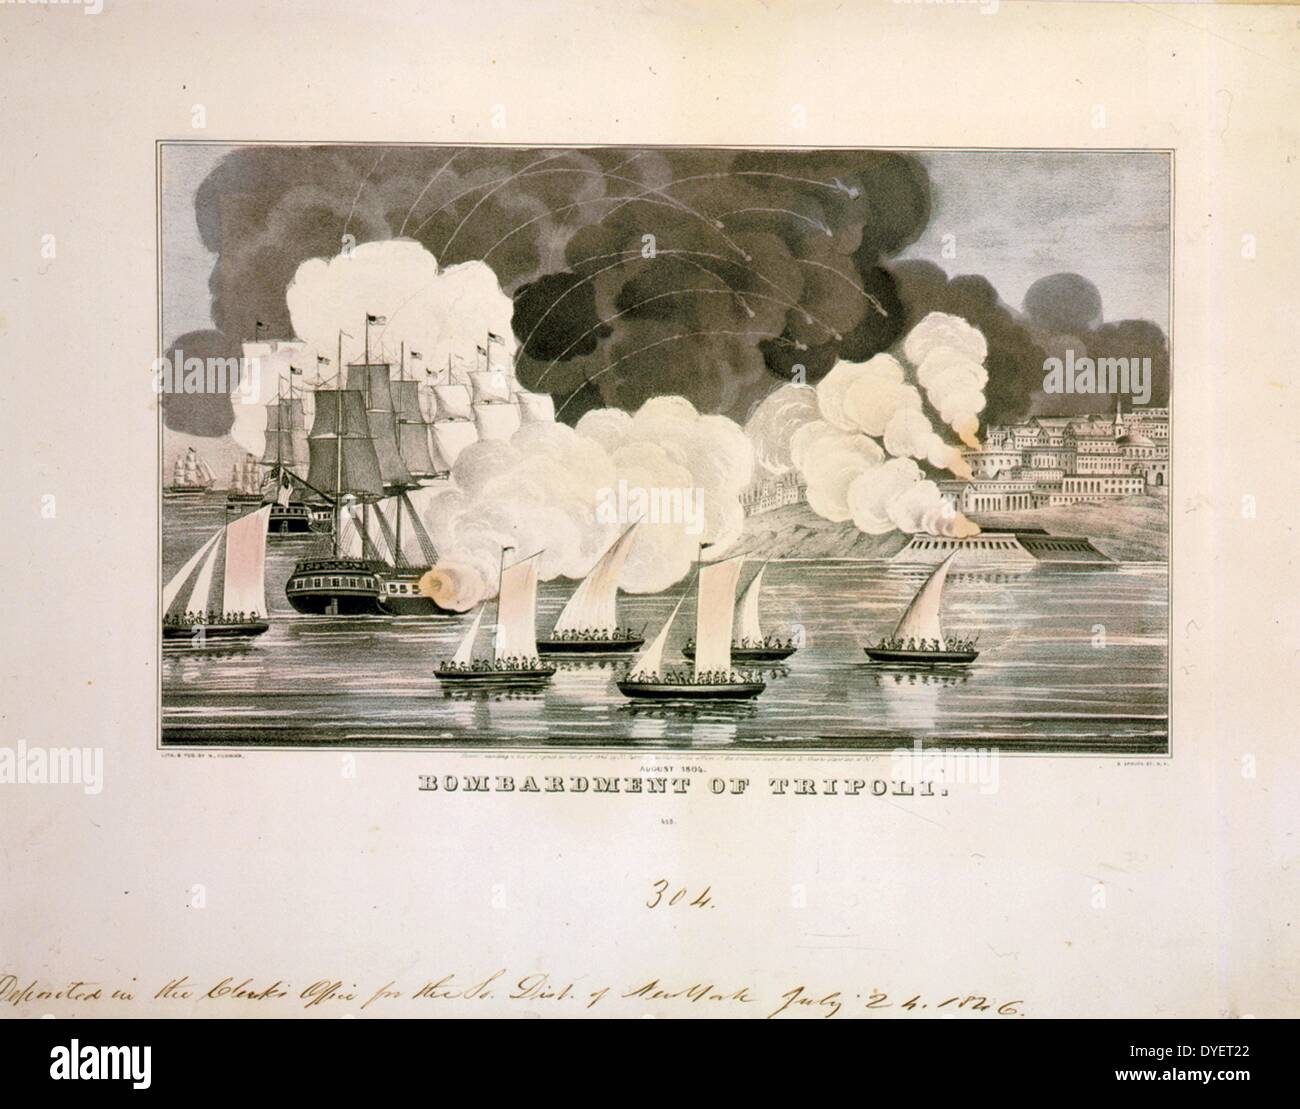 Bombardierung von Tripolis 1805. Lithografie von Currier & Ives. 18460101. Tripolitan Krieg, 1801-1805 Stockfoto